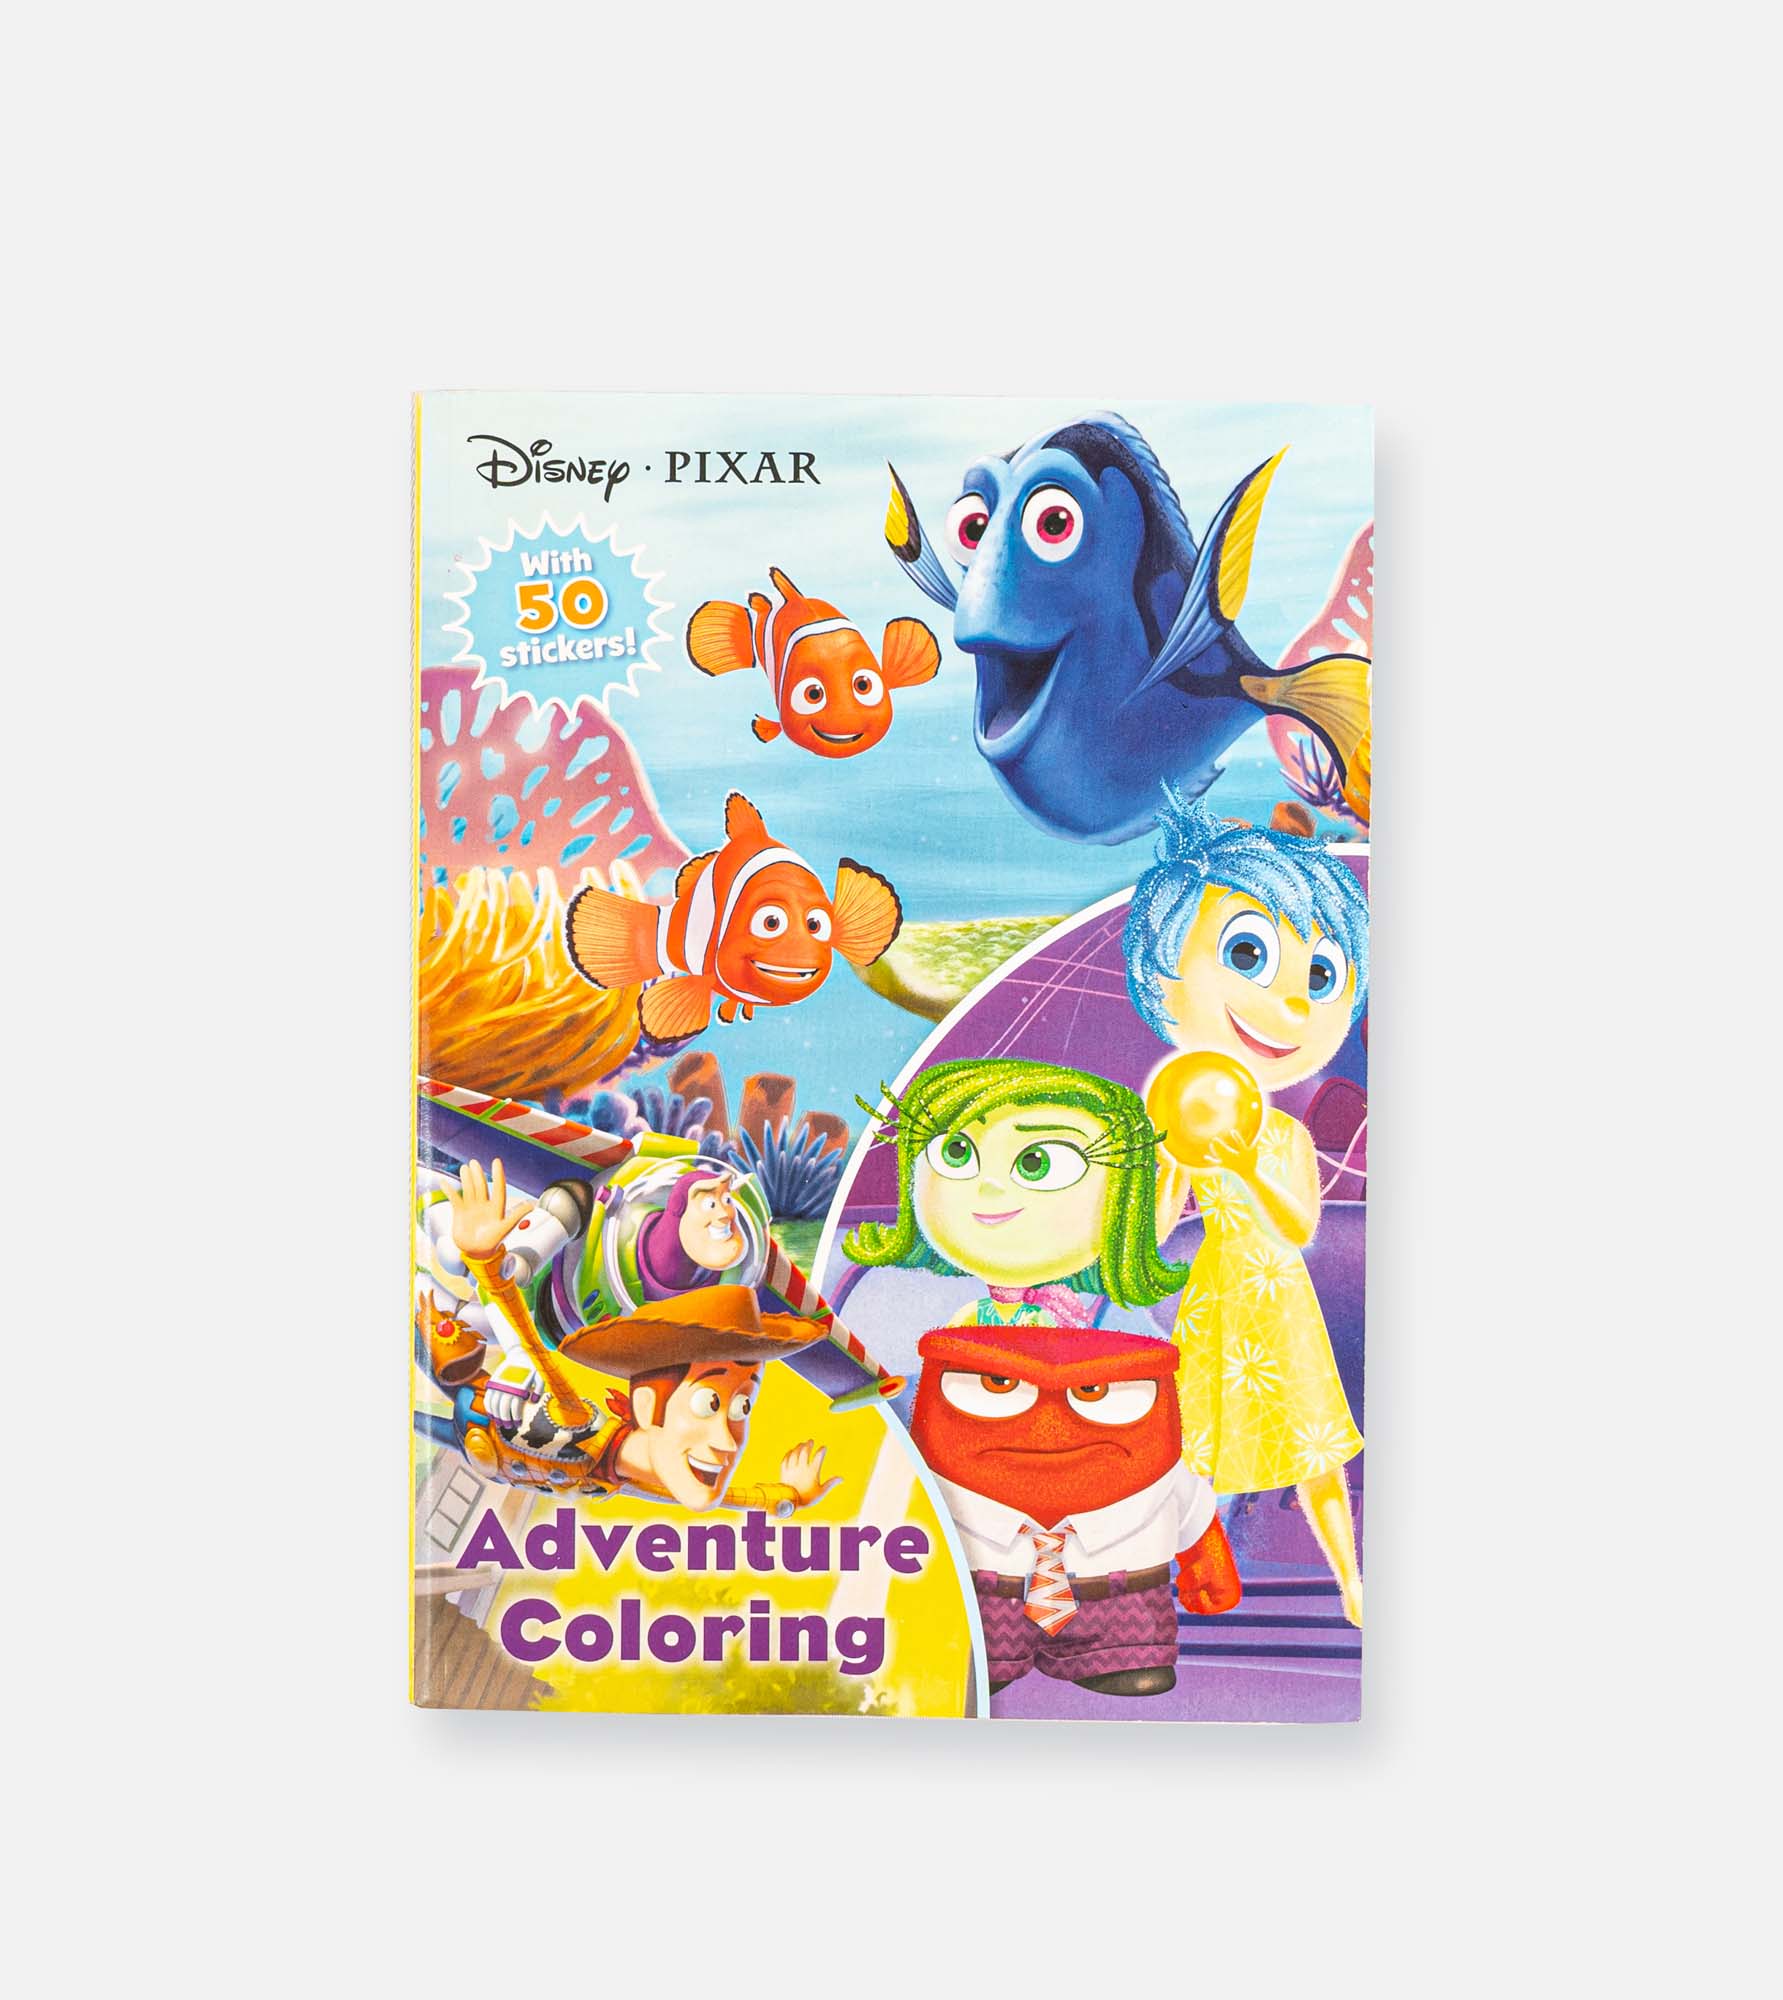 Disney advnture - coloring & activity book